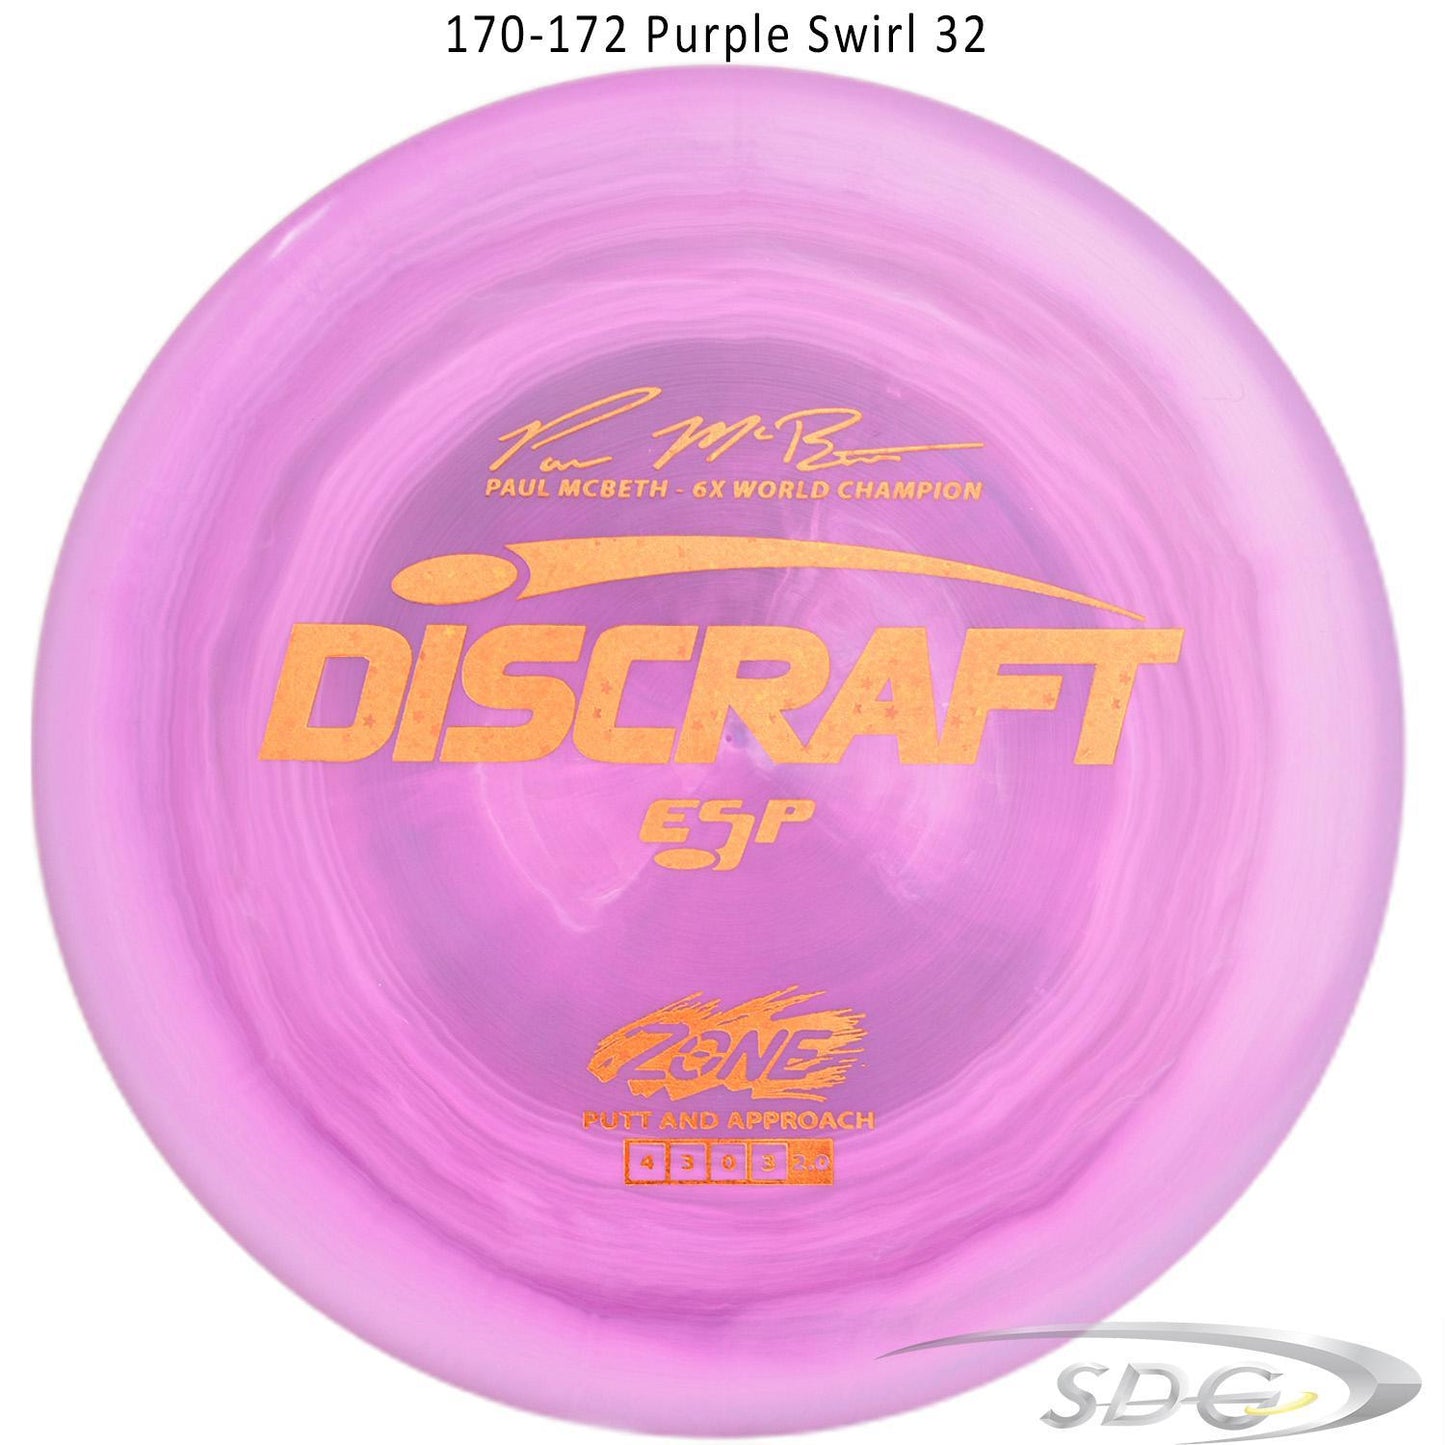 discraft-esp-zone-6x-paul-mcbeth-signature-series-disc-golf-putter 170-172 Purple Swirl 32